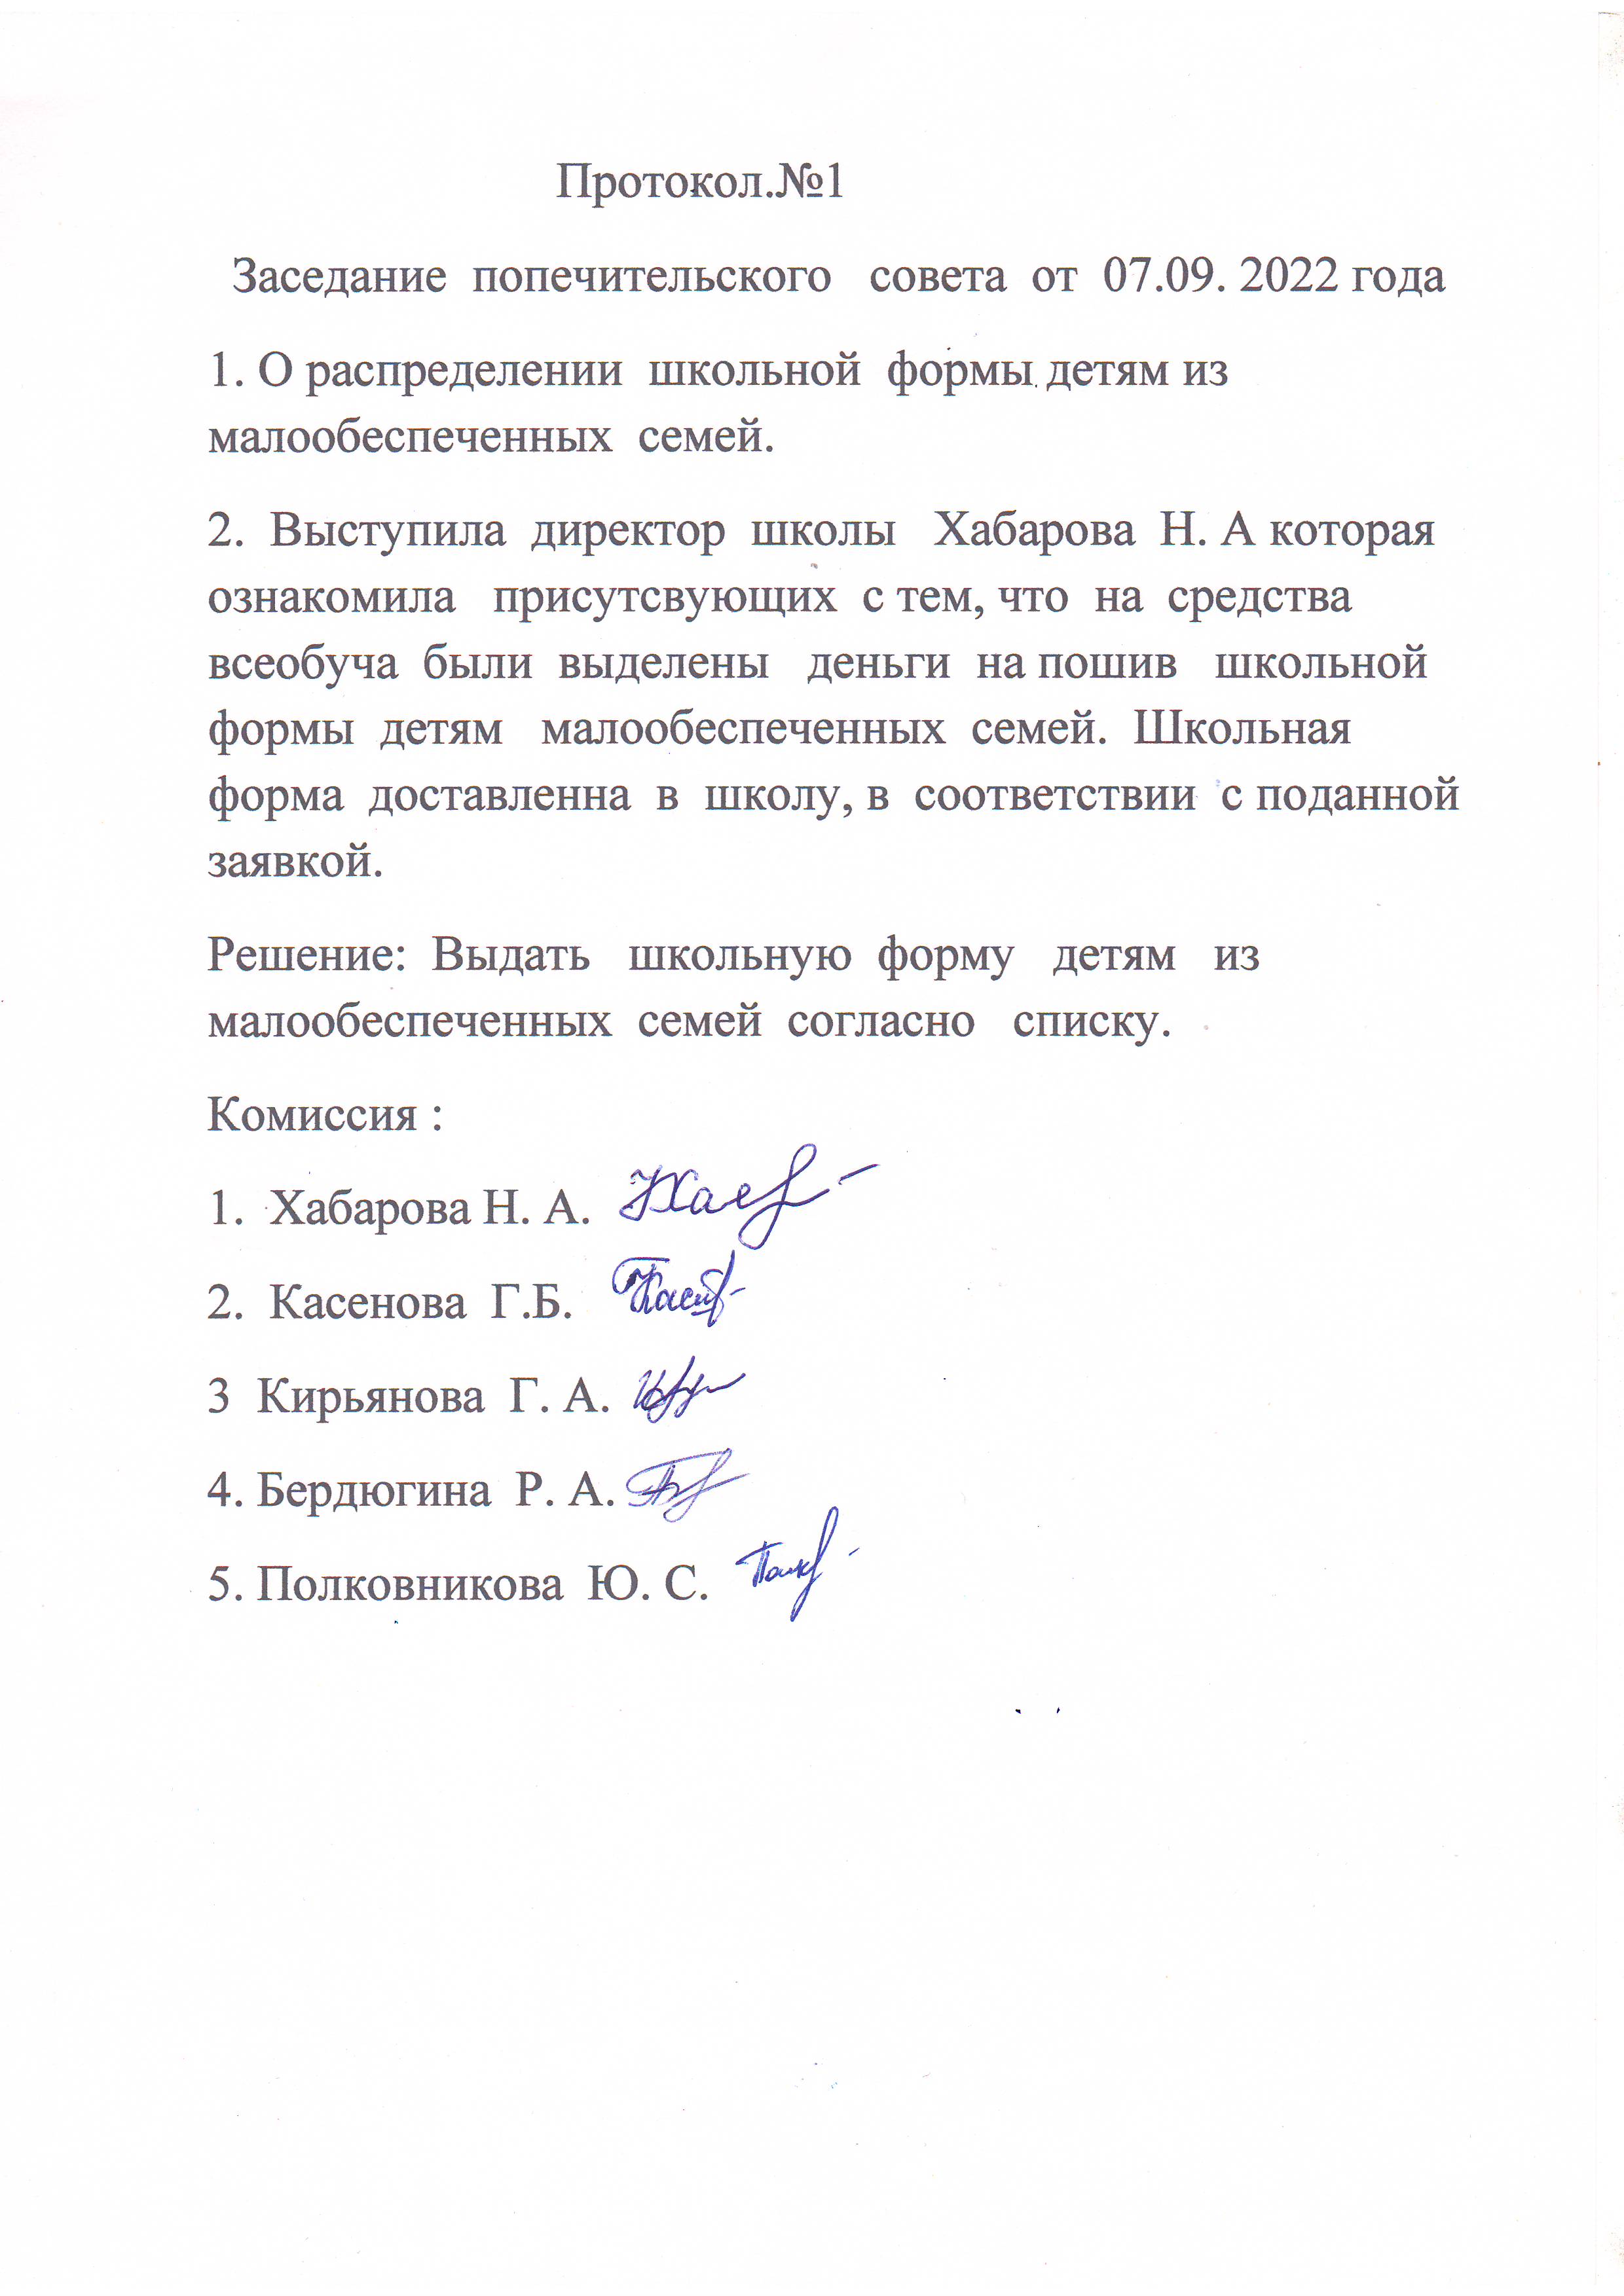 Протокол Попечительского совета №1 от 07.09.2022 года